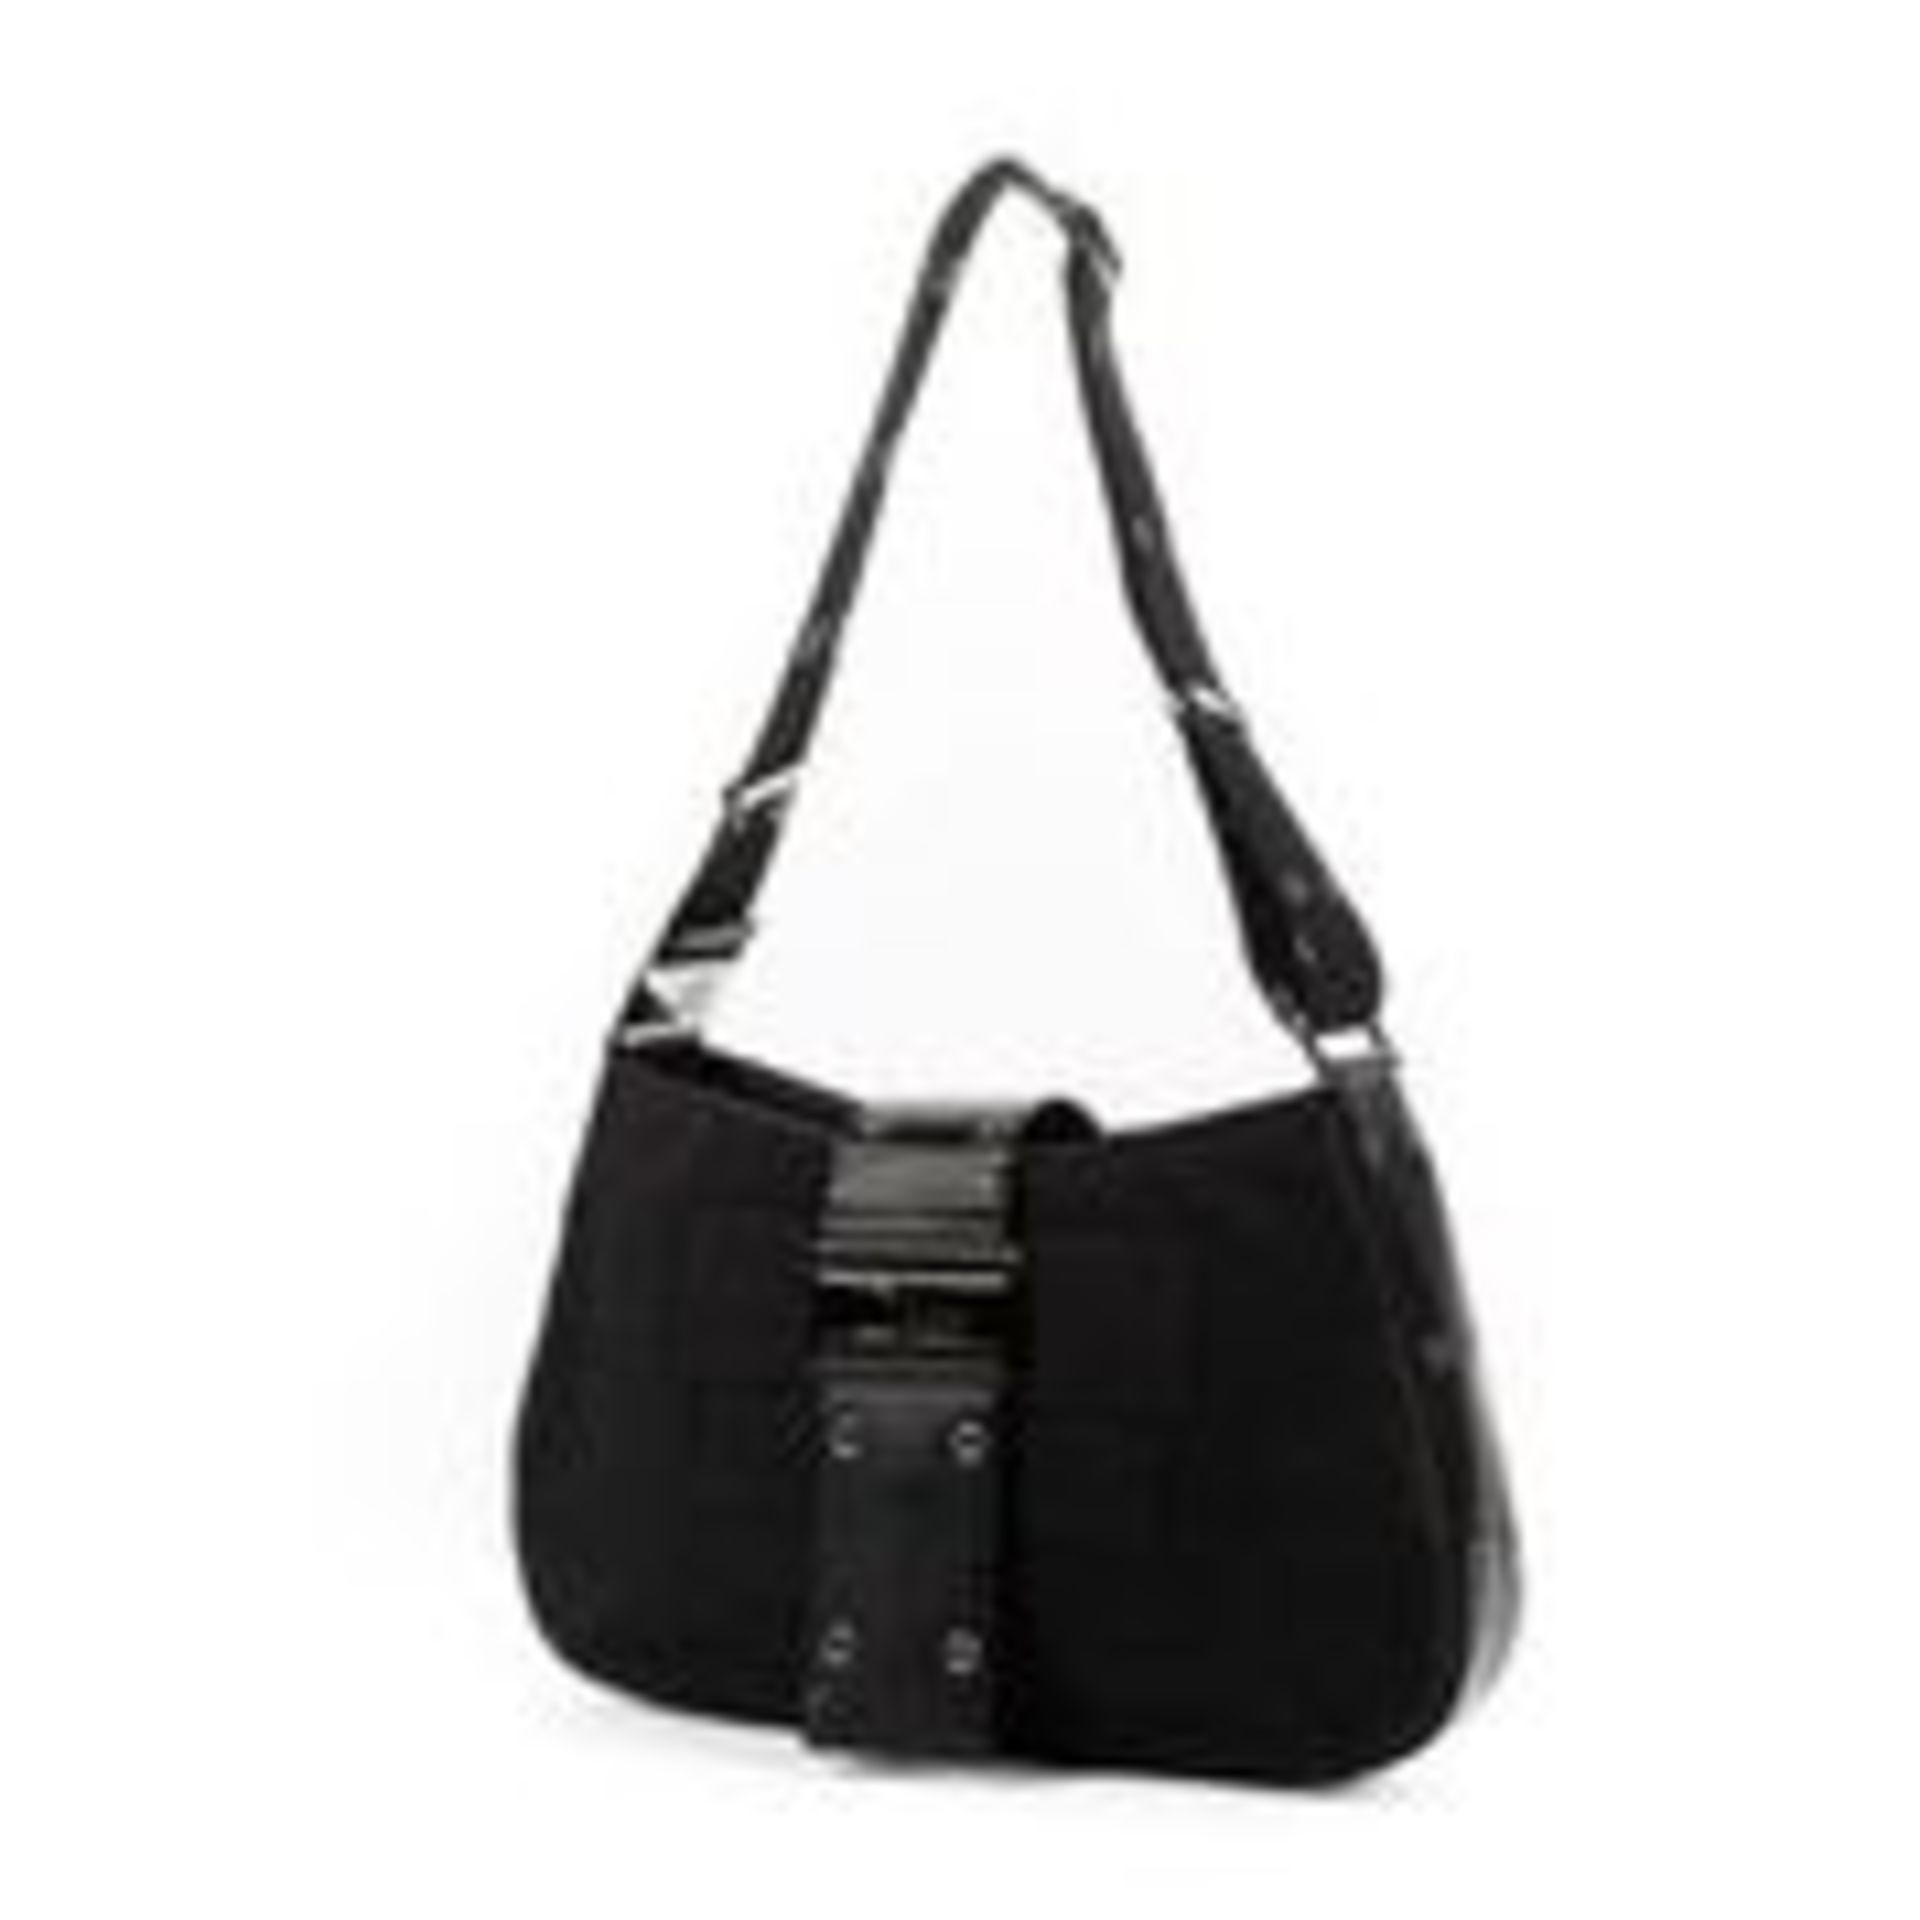 Vintage Christian Dior Galliano Shoulder Handbag Black - EAG3500 - Grade A - Please Contact Us